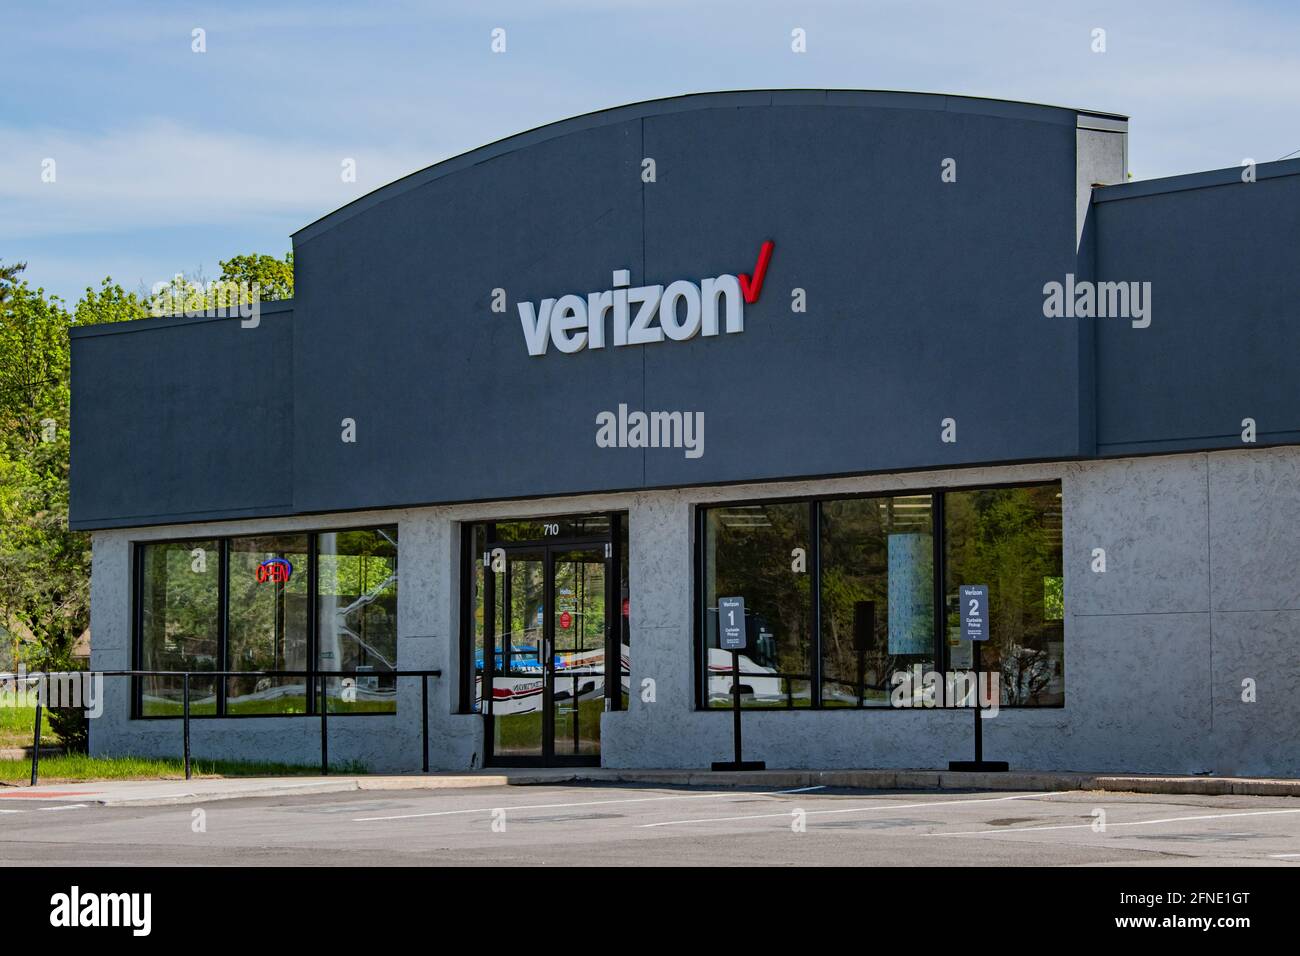 A Verizon Wireless store building in Utica, NY USA Stock Photo